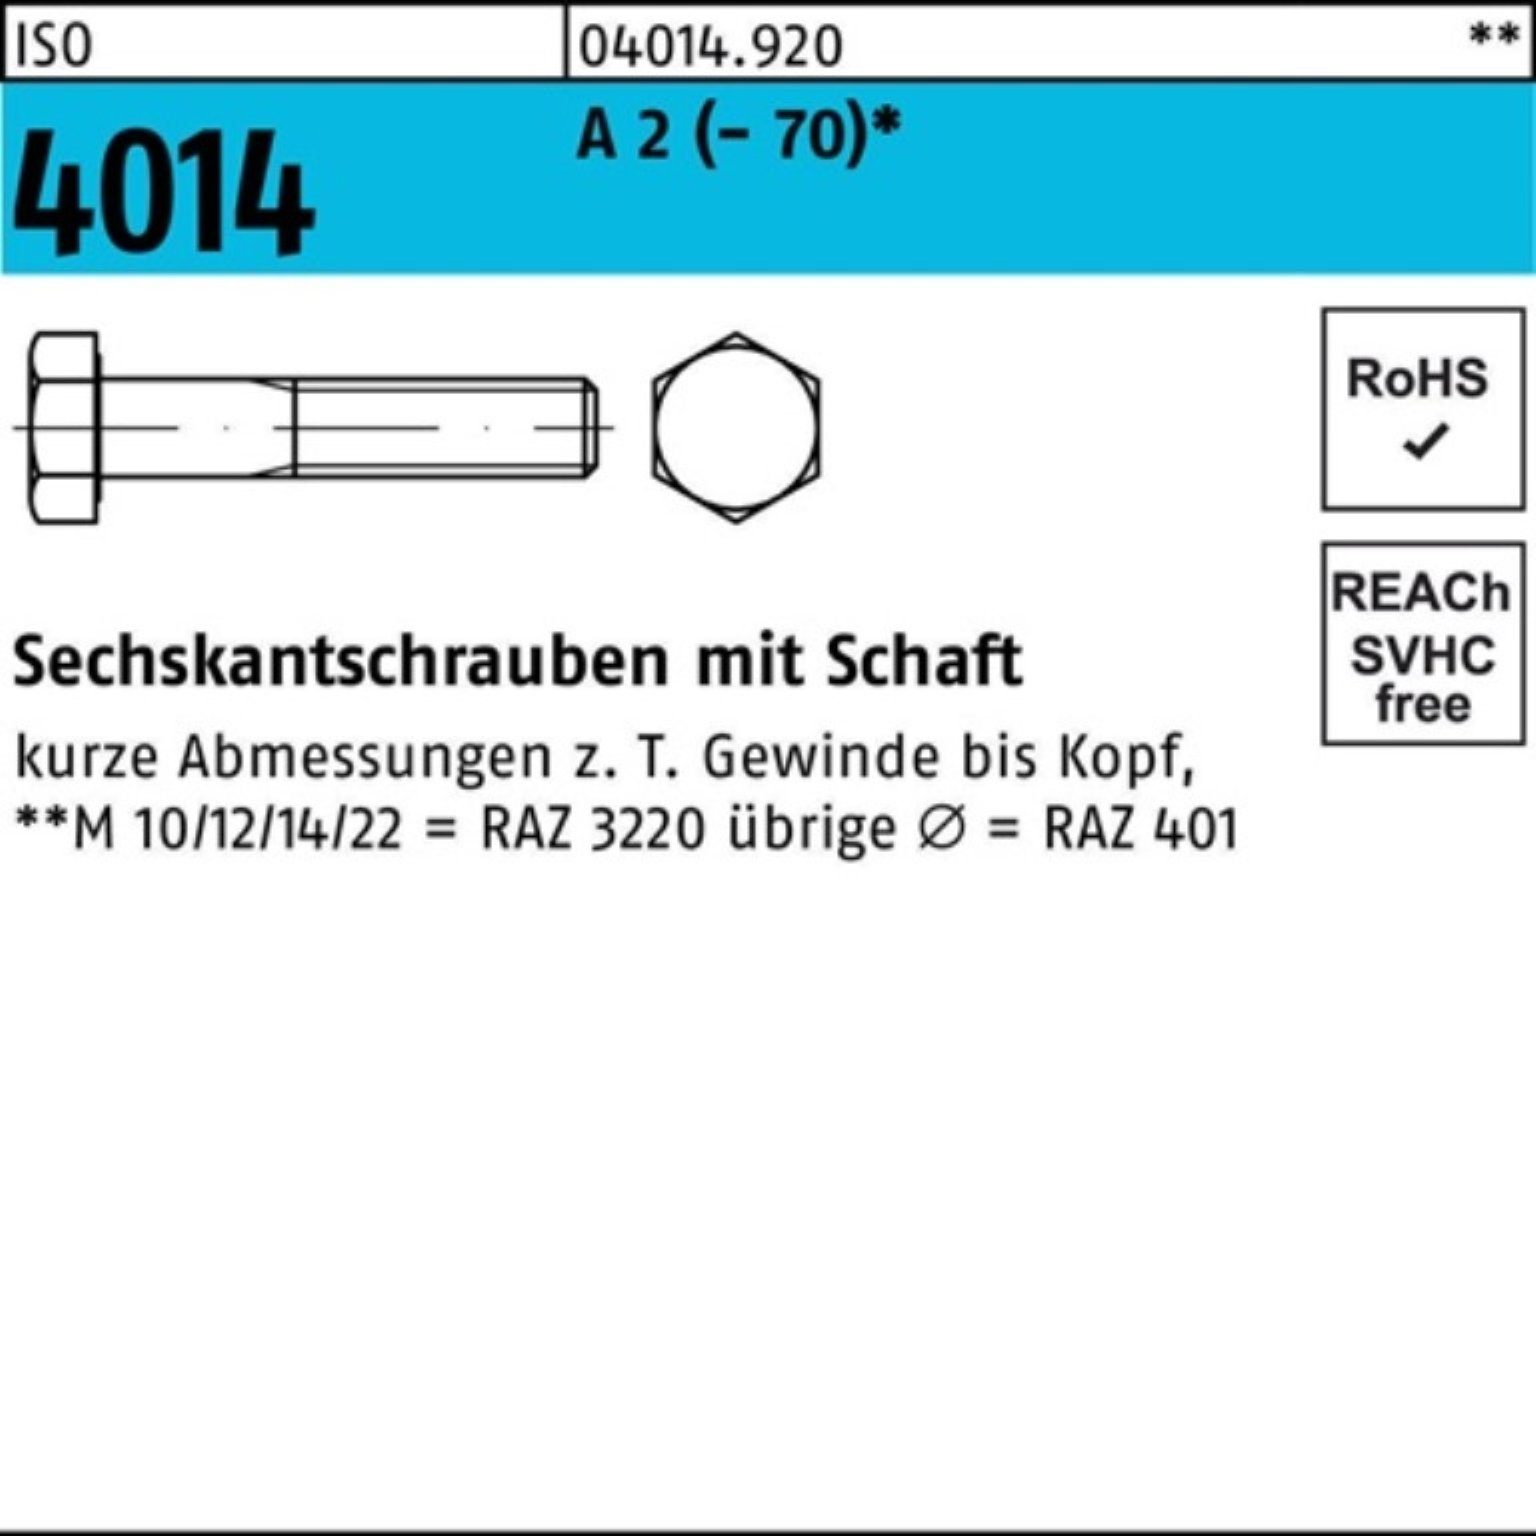 Bufab Sechskantschraube 100er Pack Sechskantschraube ISO 4014 Schaft M6x 40 A 2 (70) 100 St